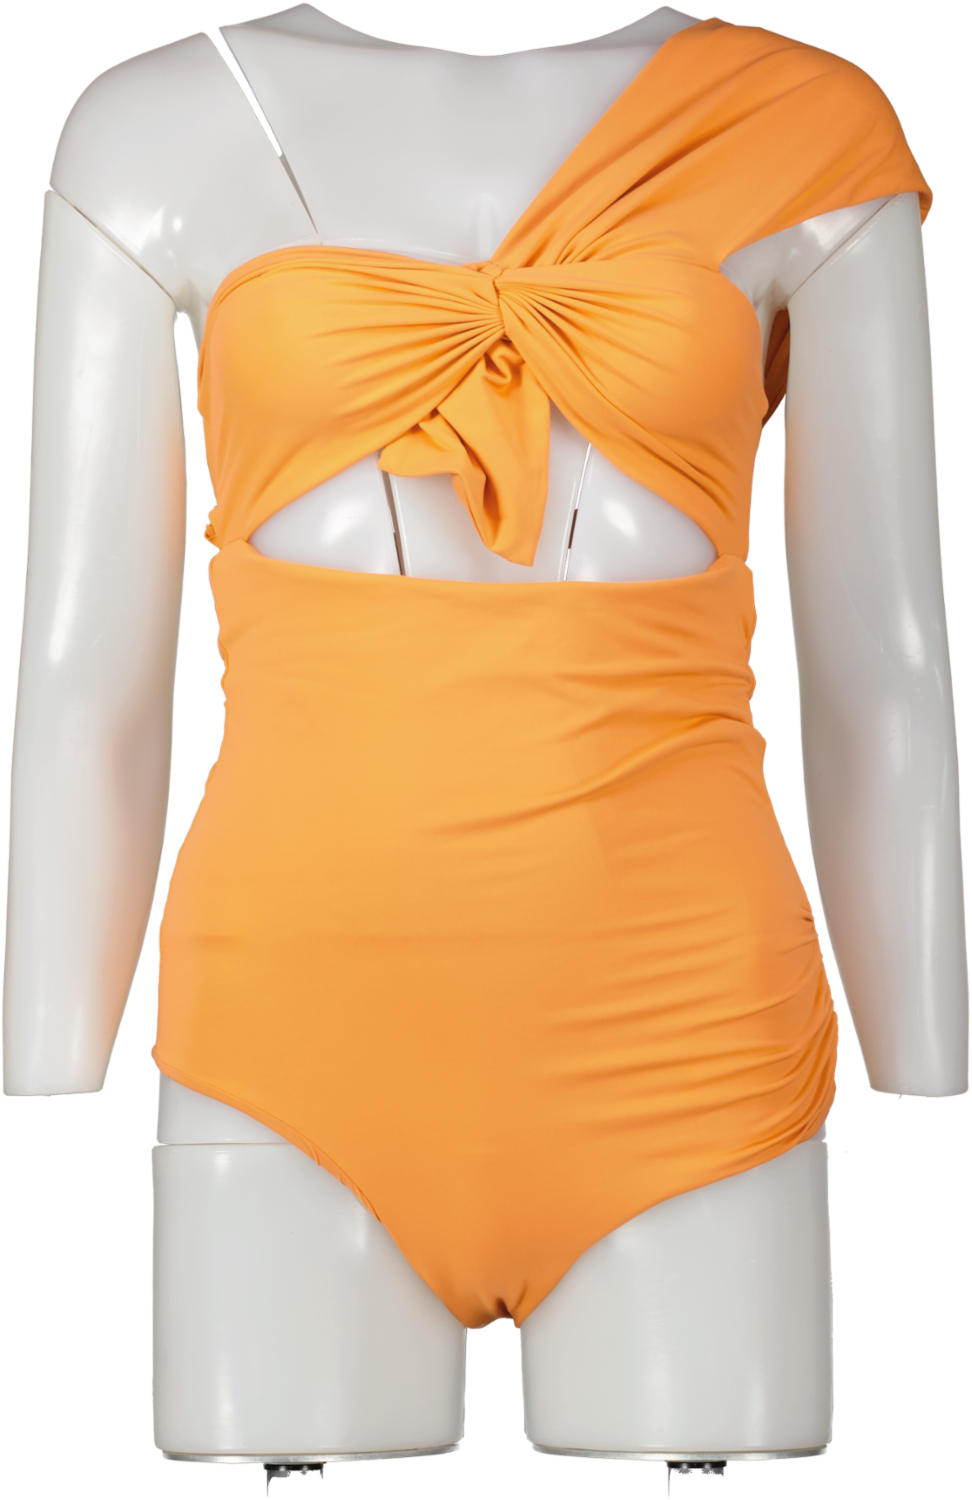 Marysia Orange Venice One-shoulder Cutout Swimsuit UK S